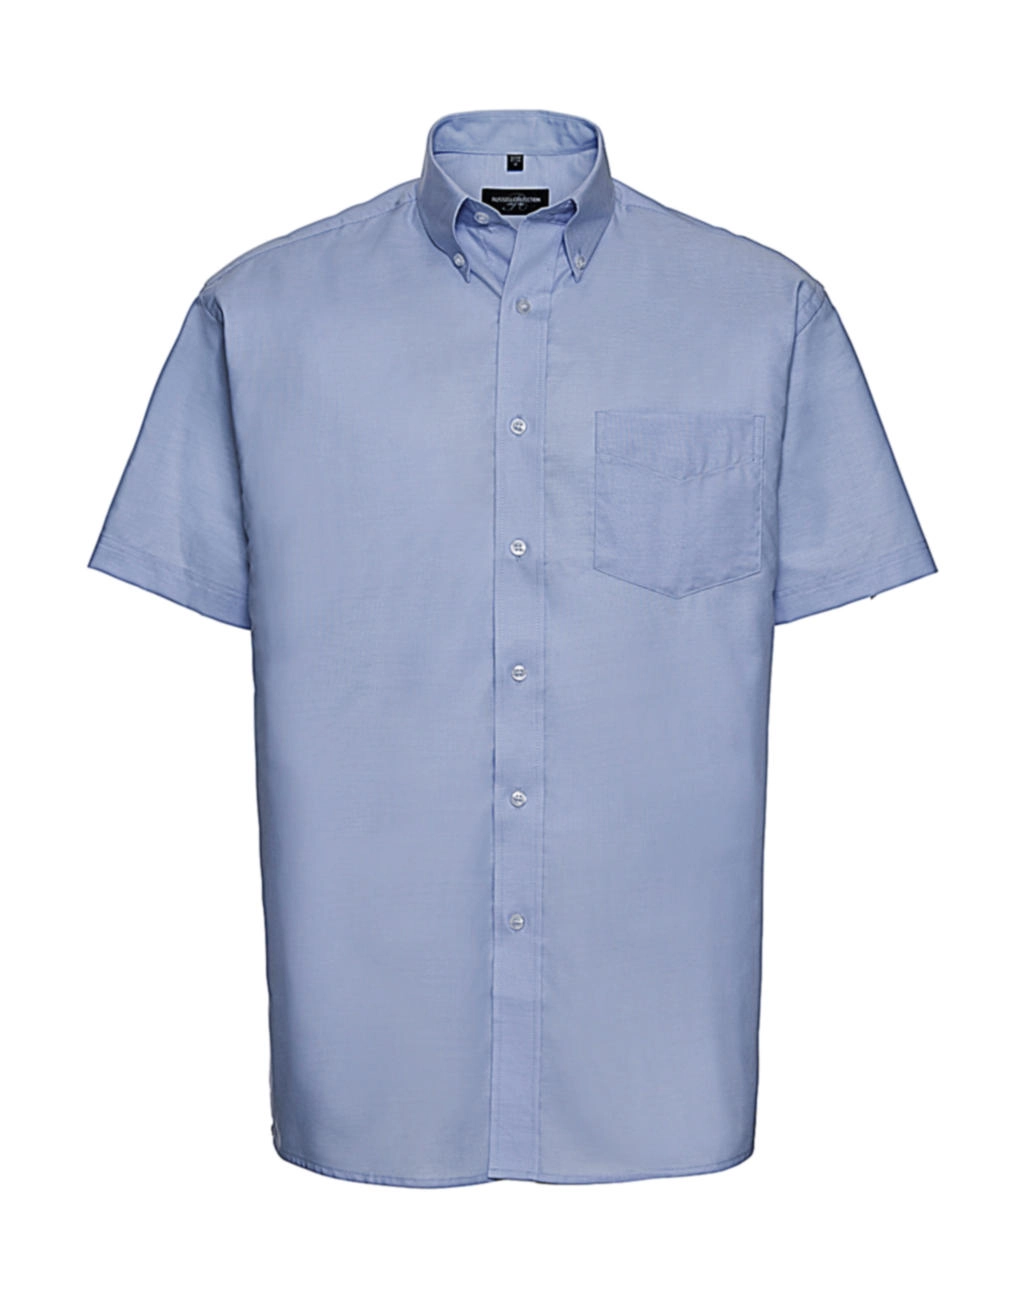 Oxford Shirt zum Besticken und Bedrucken in der Farbe Oxford Blue mit Ihren Logo, Schriftzug oder Motiv.